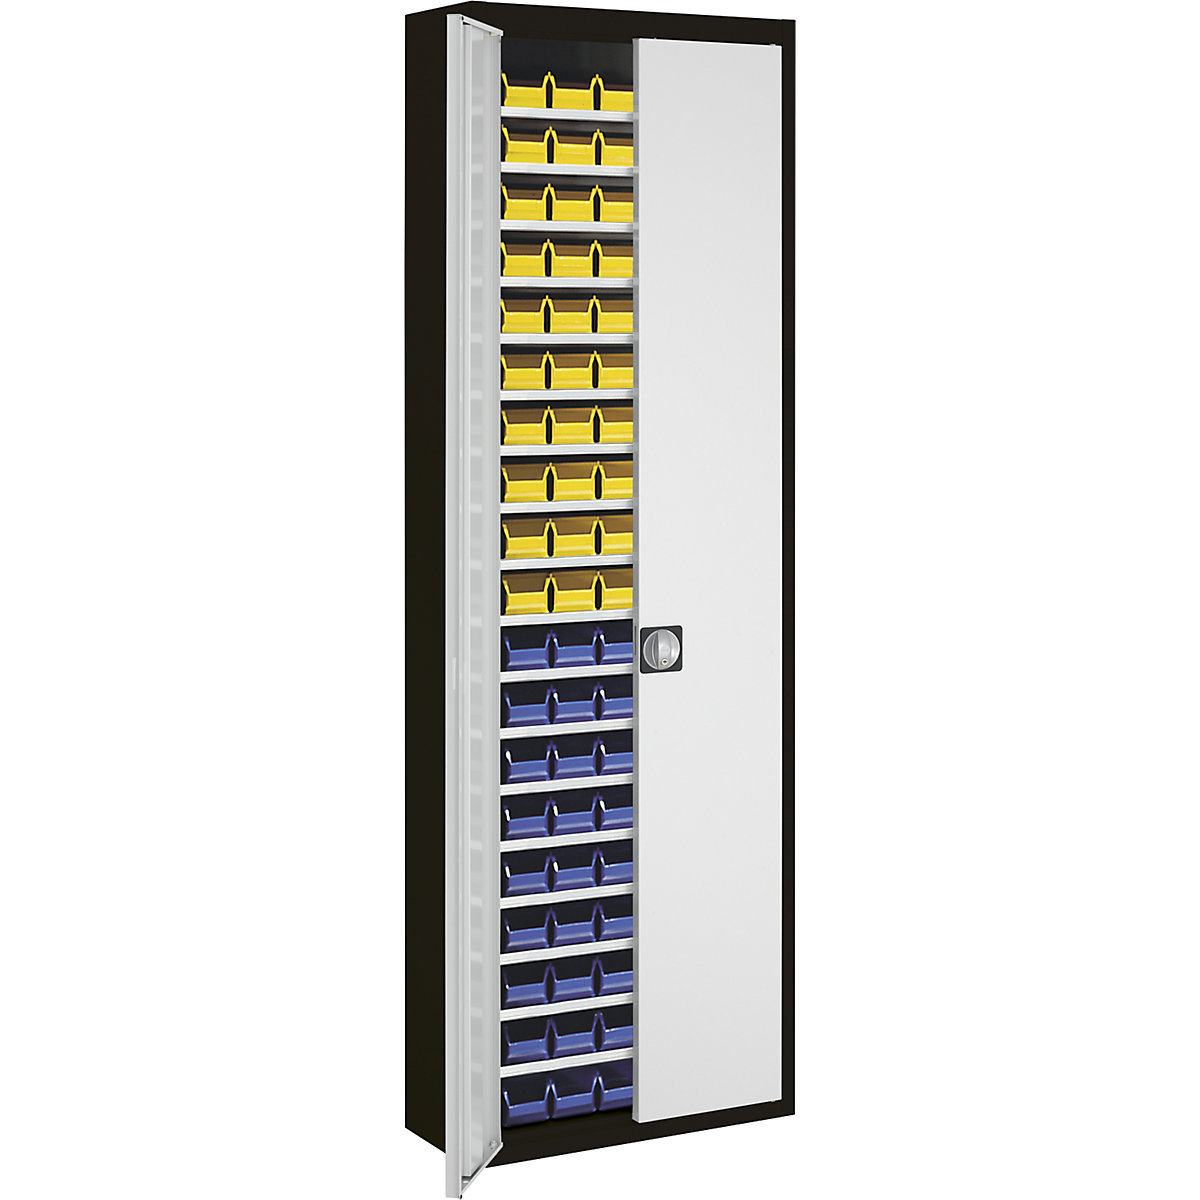 Skladišni ormar s otvorenim skladišnim kutijama – mauser, VxŠxD 2150 x 680 x 280 mm, u dvije boje, korpus u crnoj boji, vrata u sivoj boji, 114 kutija-10